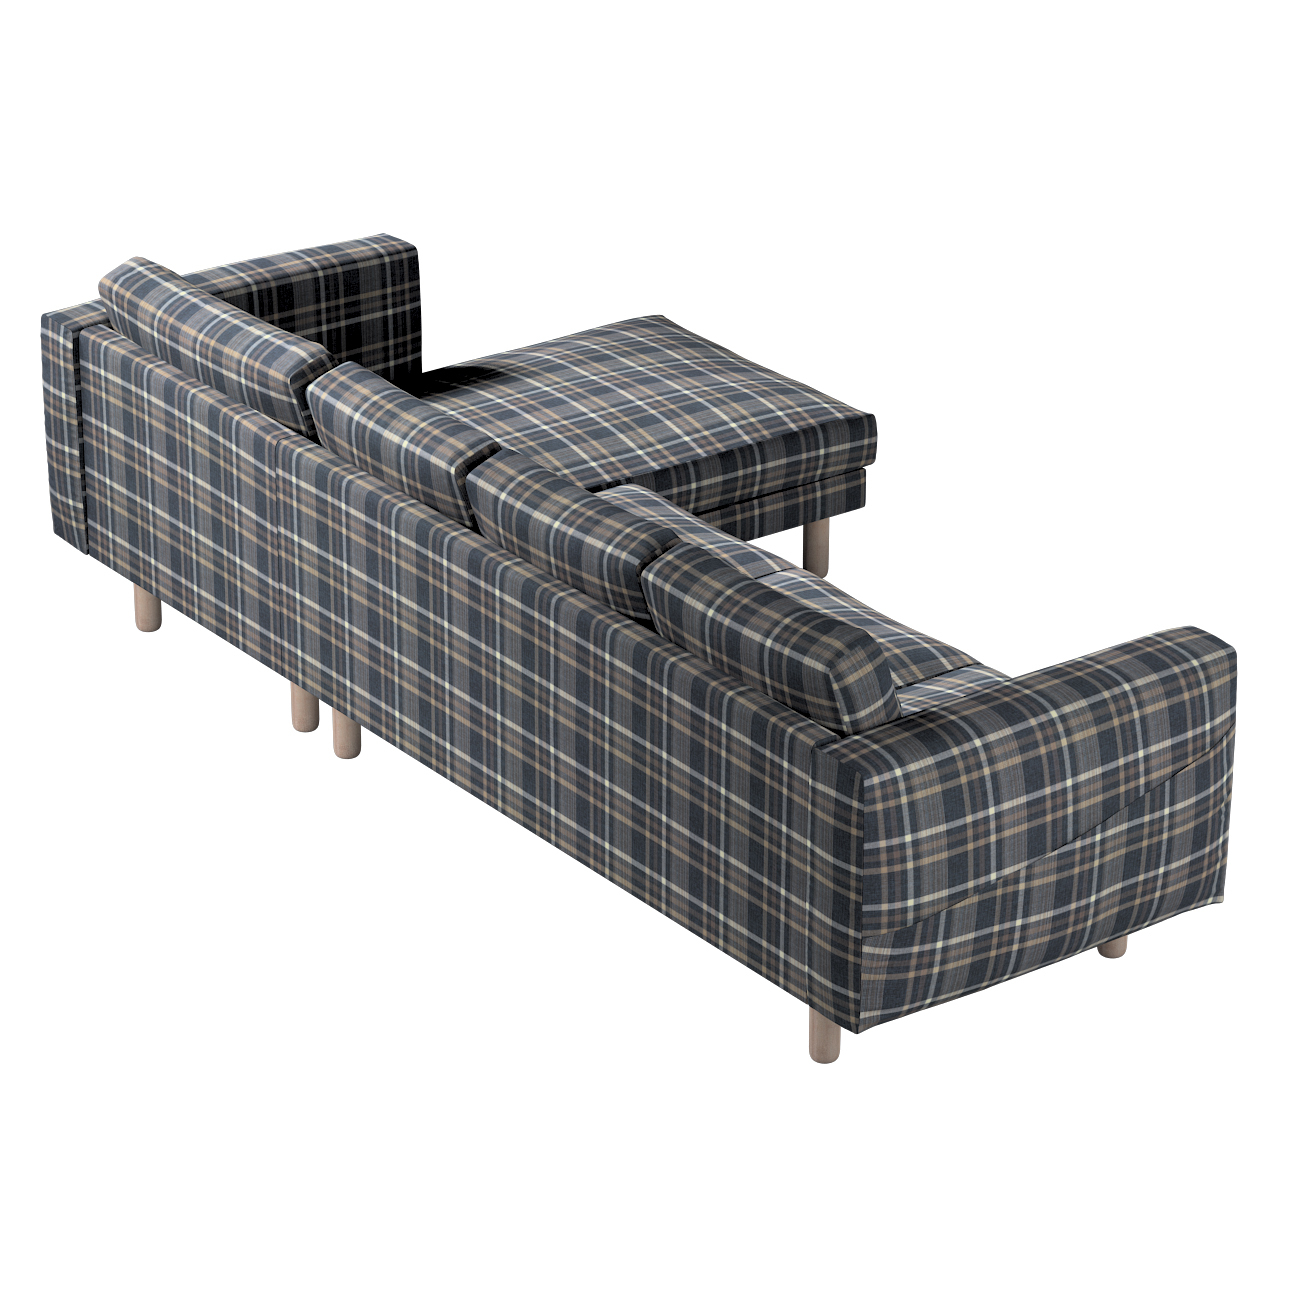 Bezug für Norsborg 4-Sitzer Sofa mit Recamiere, braun- blau, Norsborg Bezug günstig online kaufen